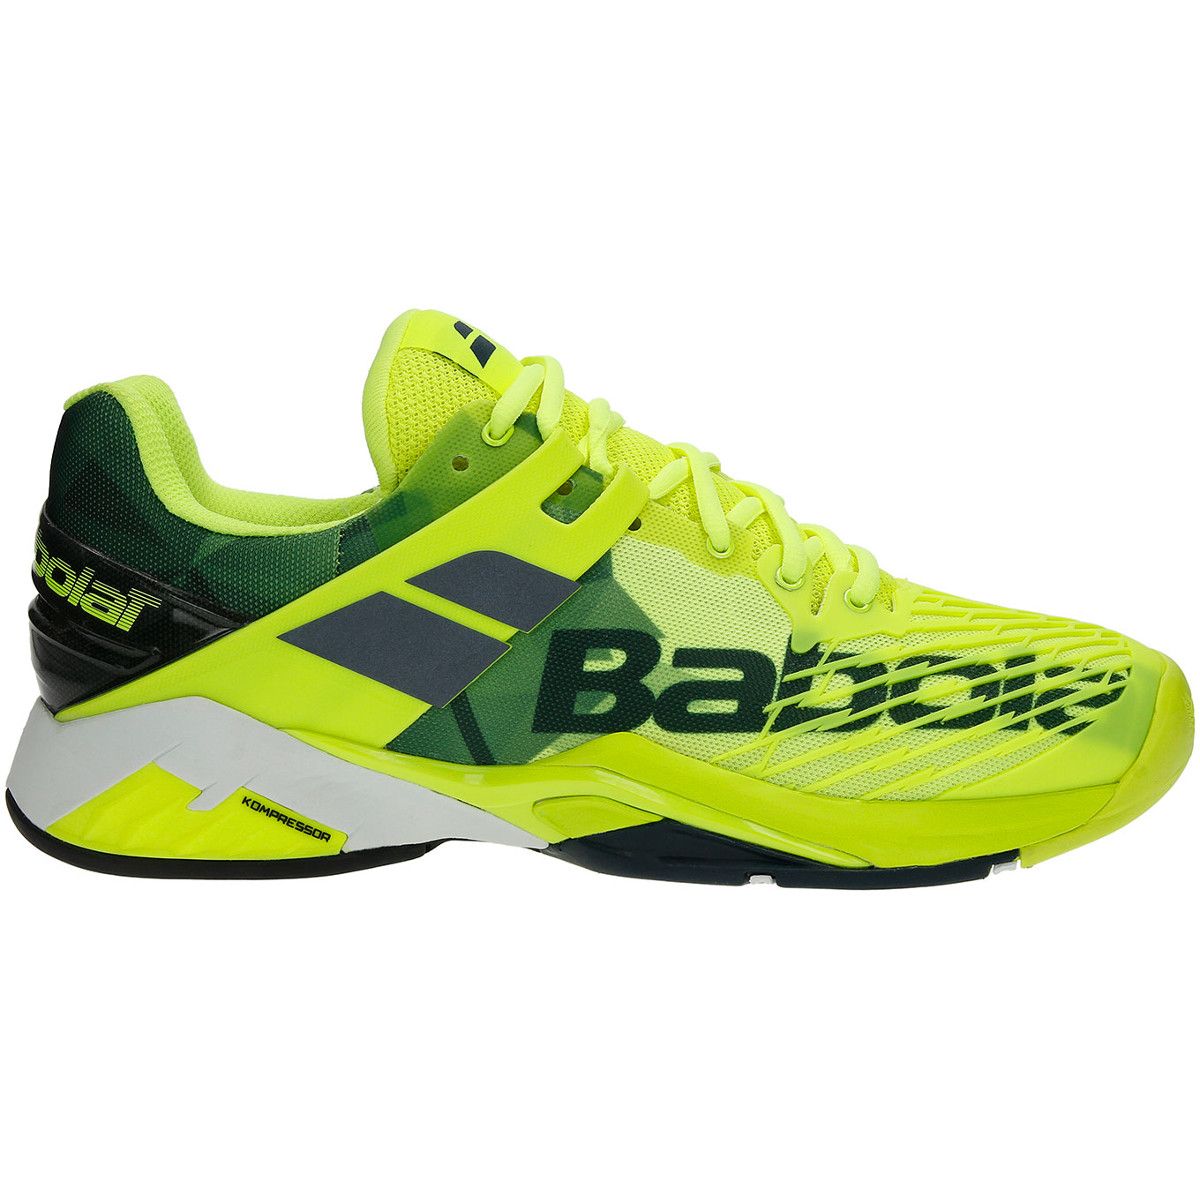 Babolat Propulse Fury All Court Men's Tennis Shoes 30S18208-